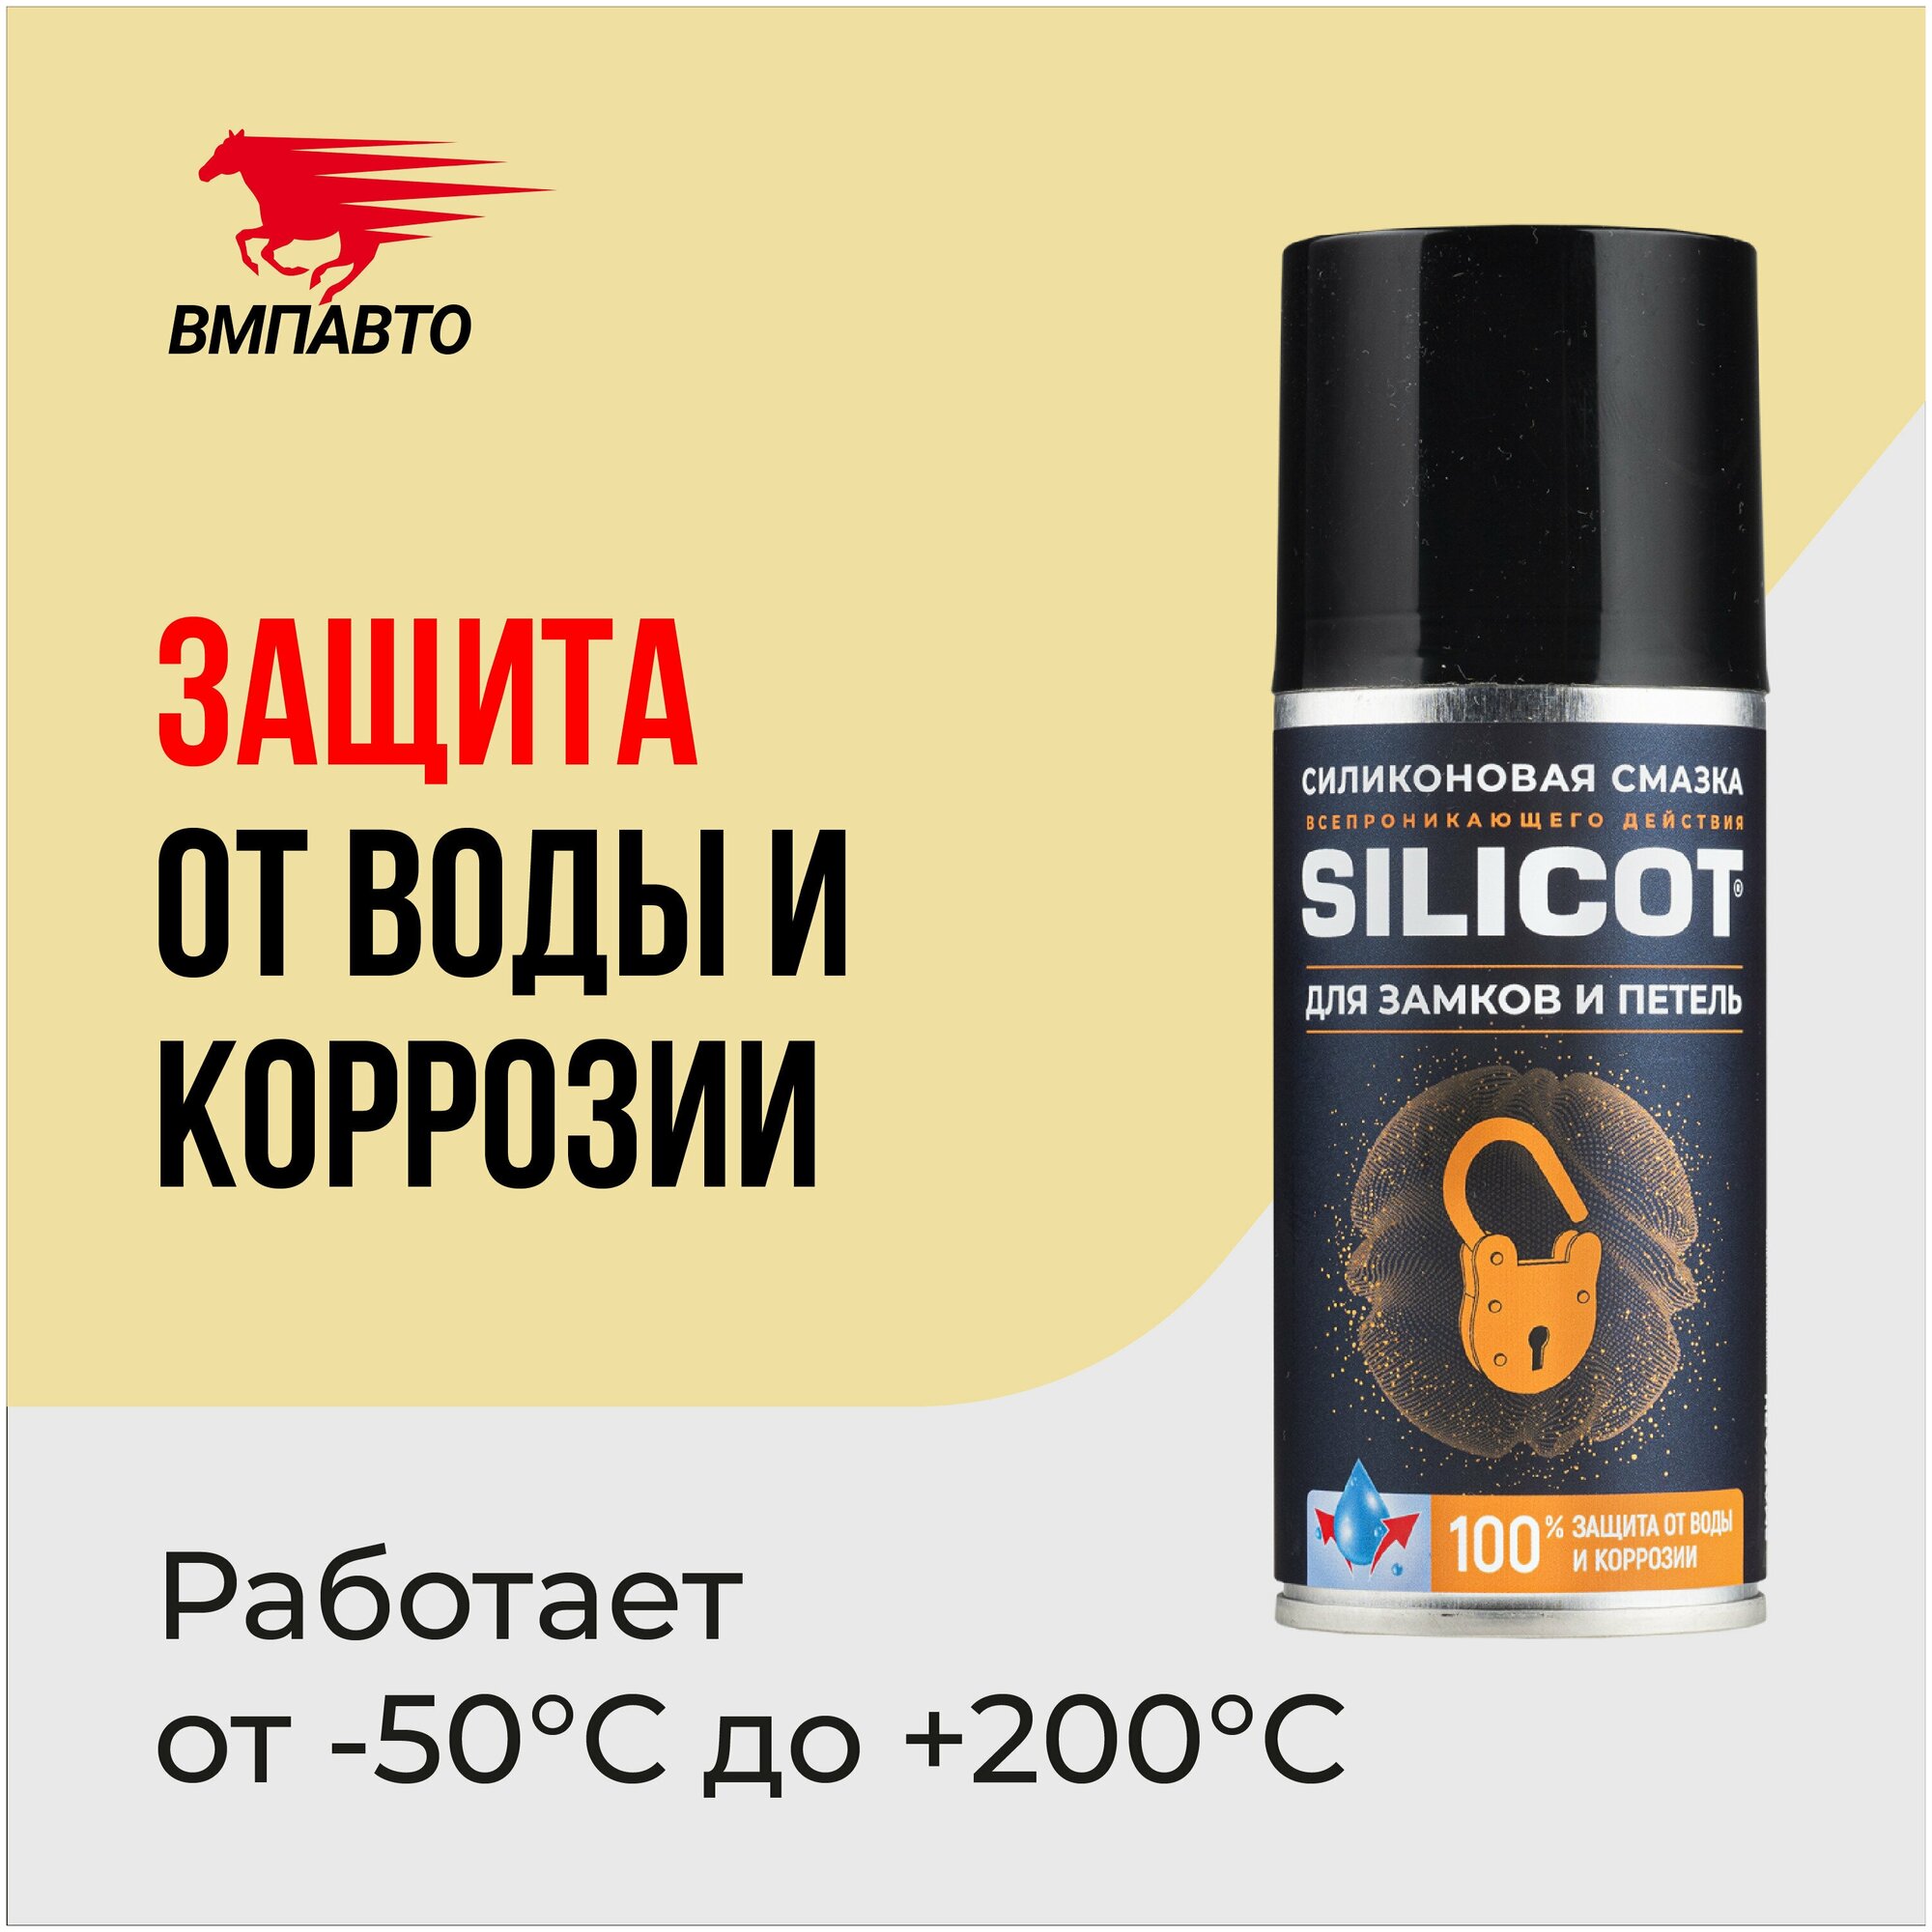 Смазка силиконовая "Silicot Spray" для замков и петель ВМПАВТО, 210 мл.